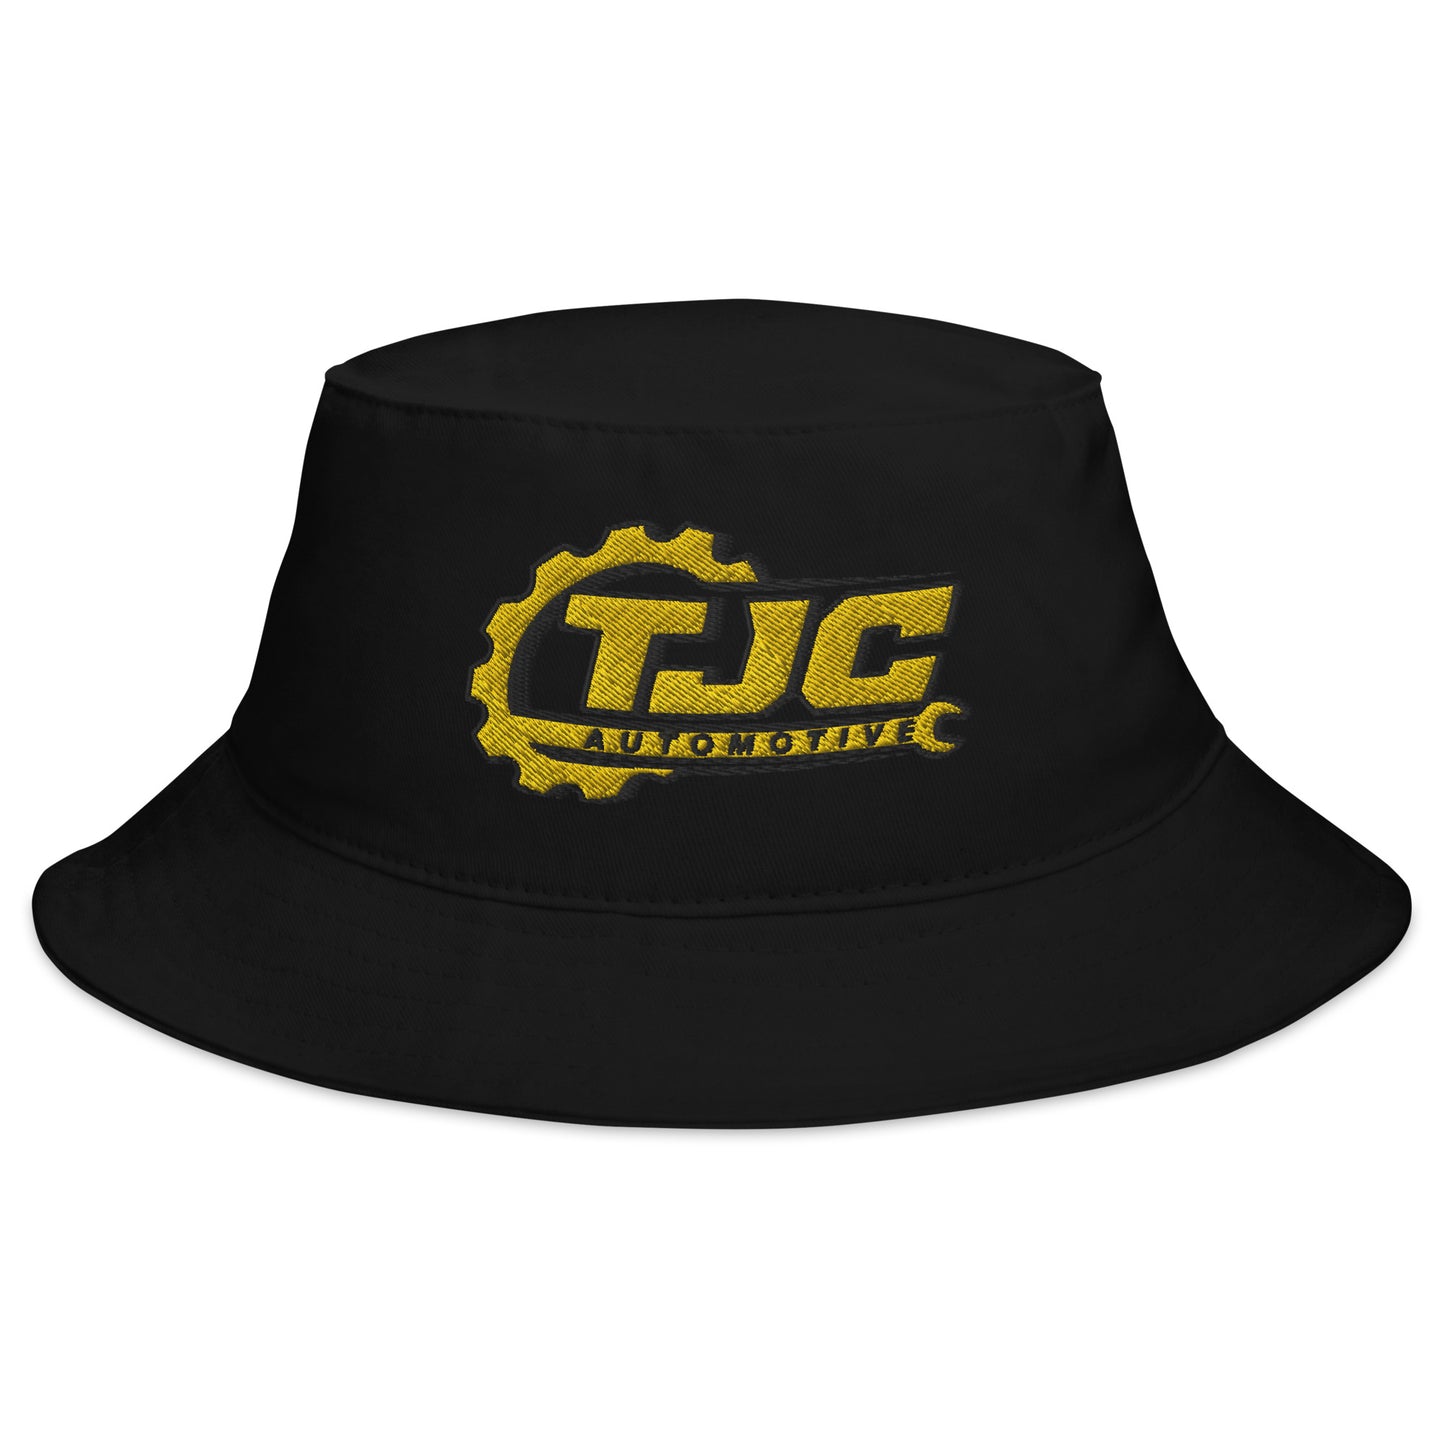 T.J.C. Bucket Hat